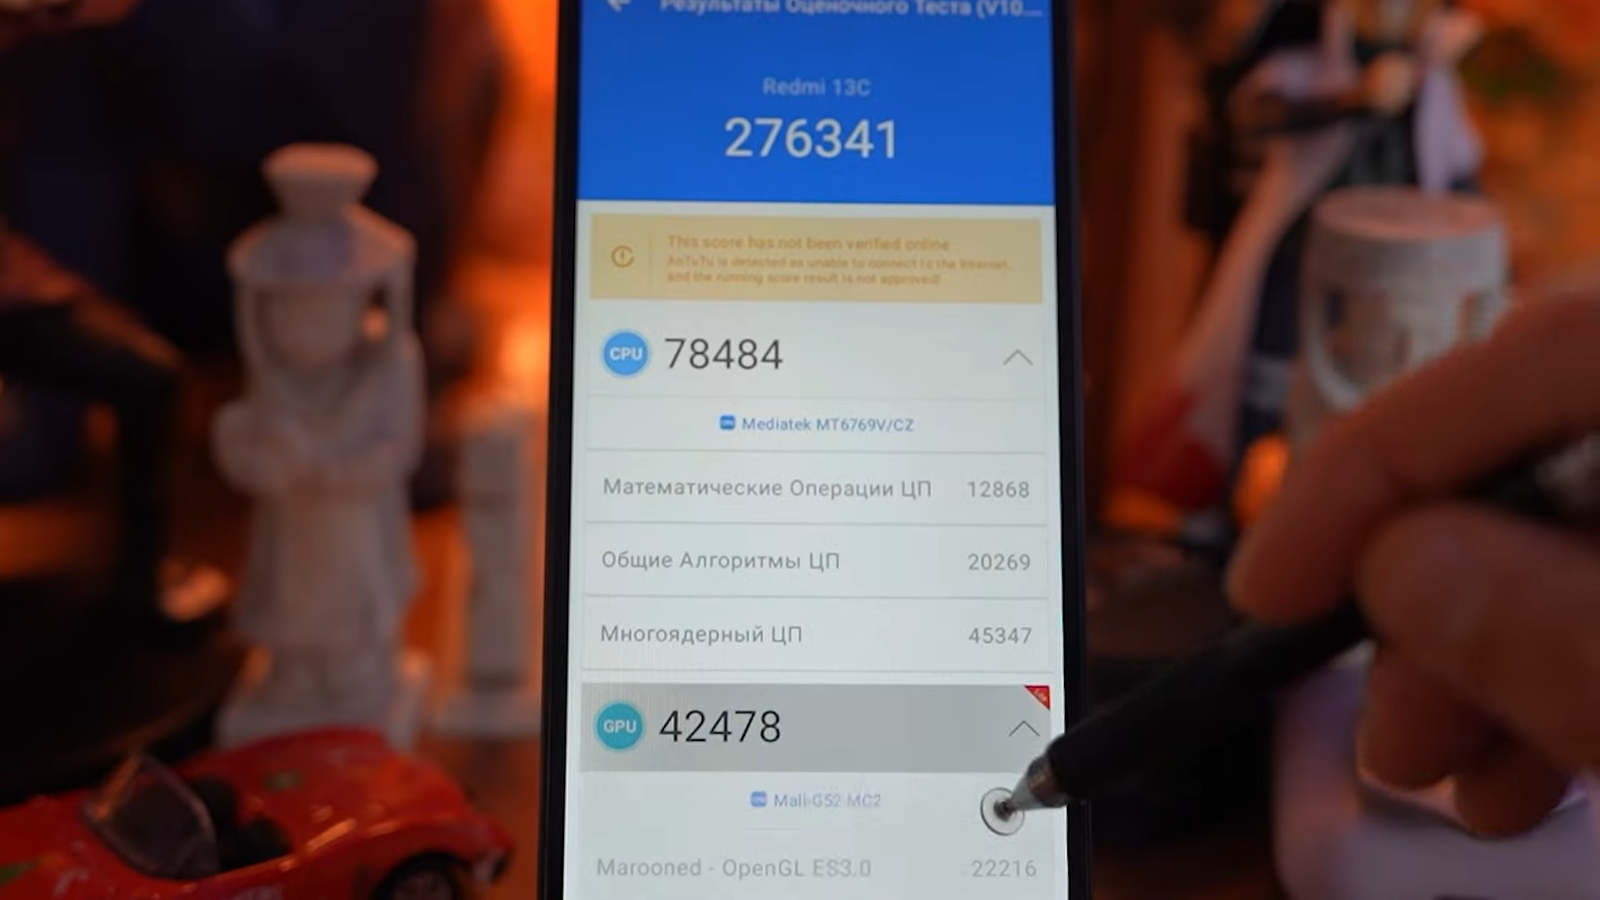 Плюсы и минусы нового бюджетного смартфона Xiaomi Redmi 13C2